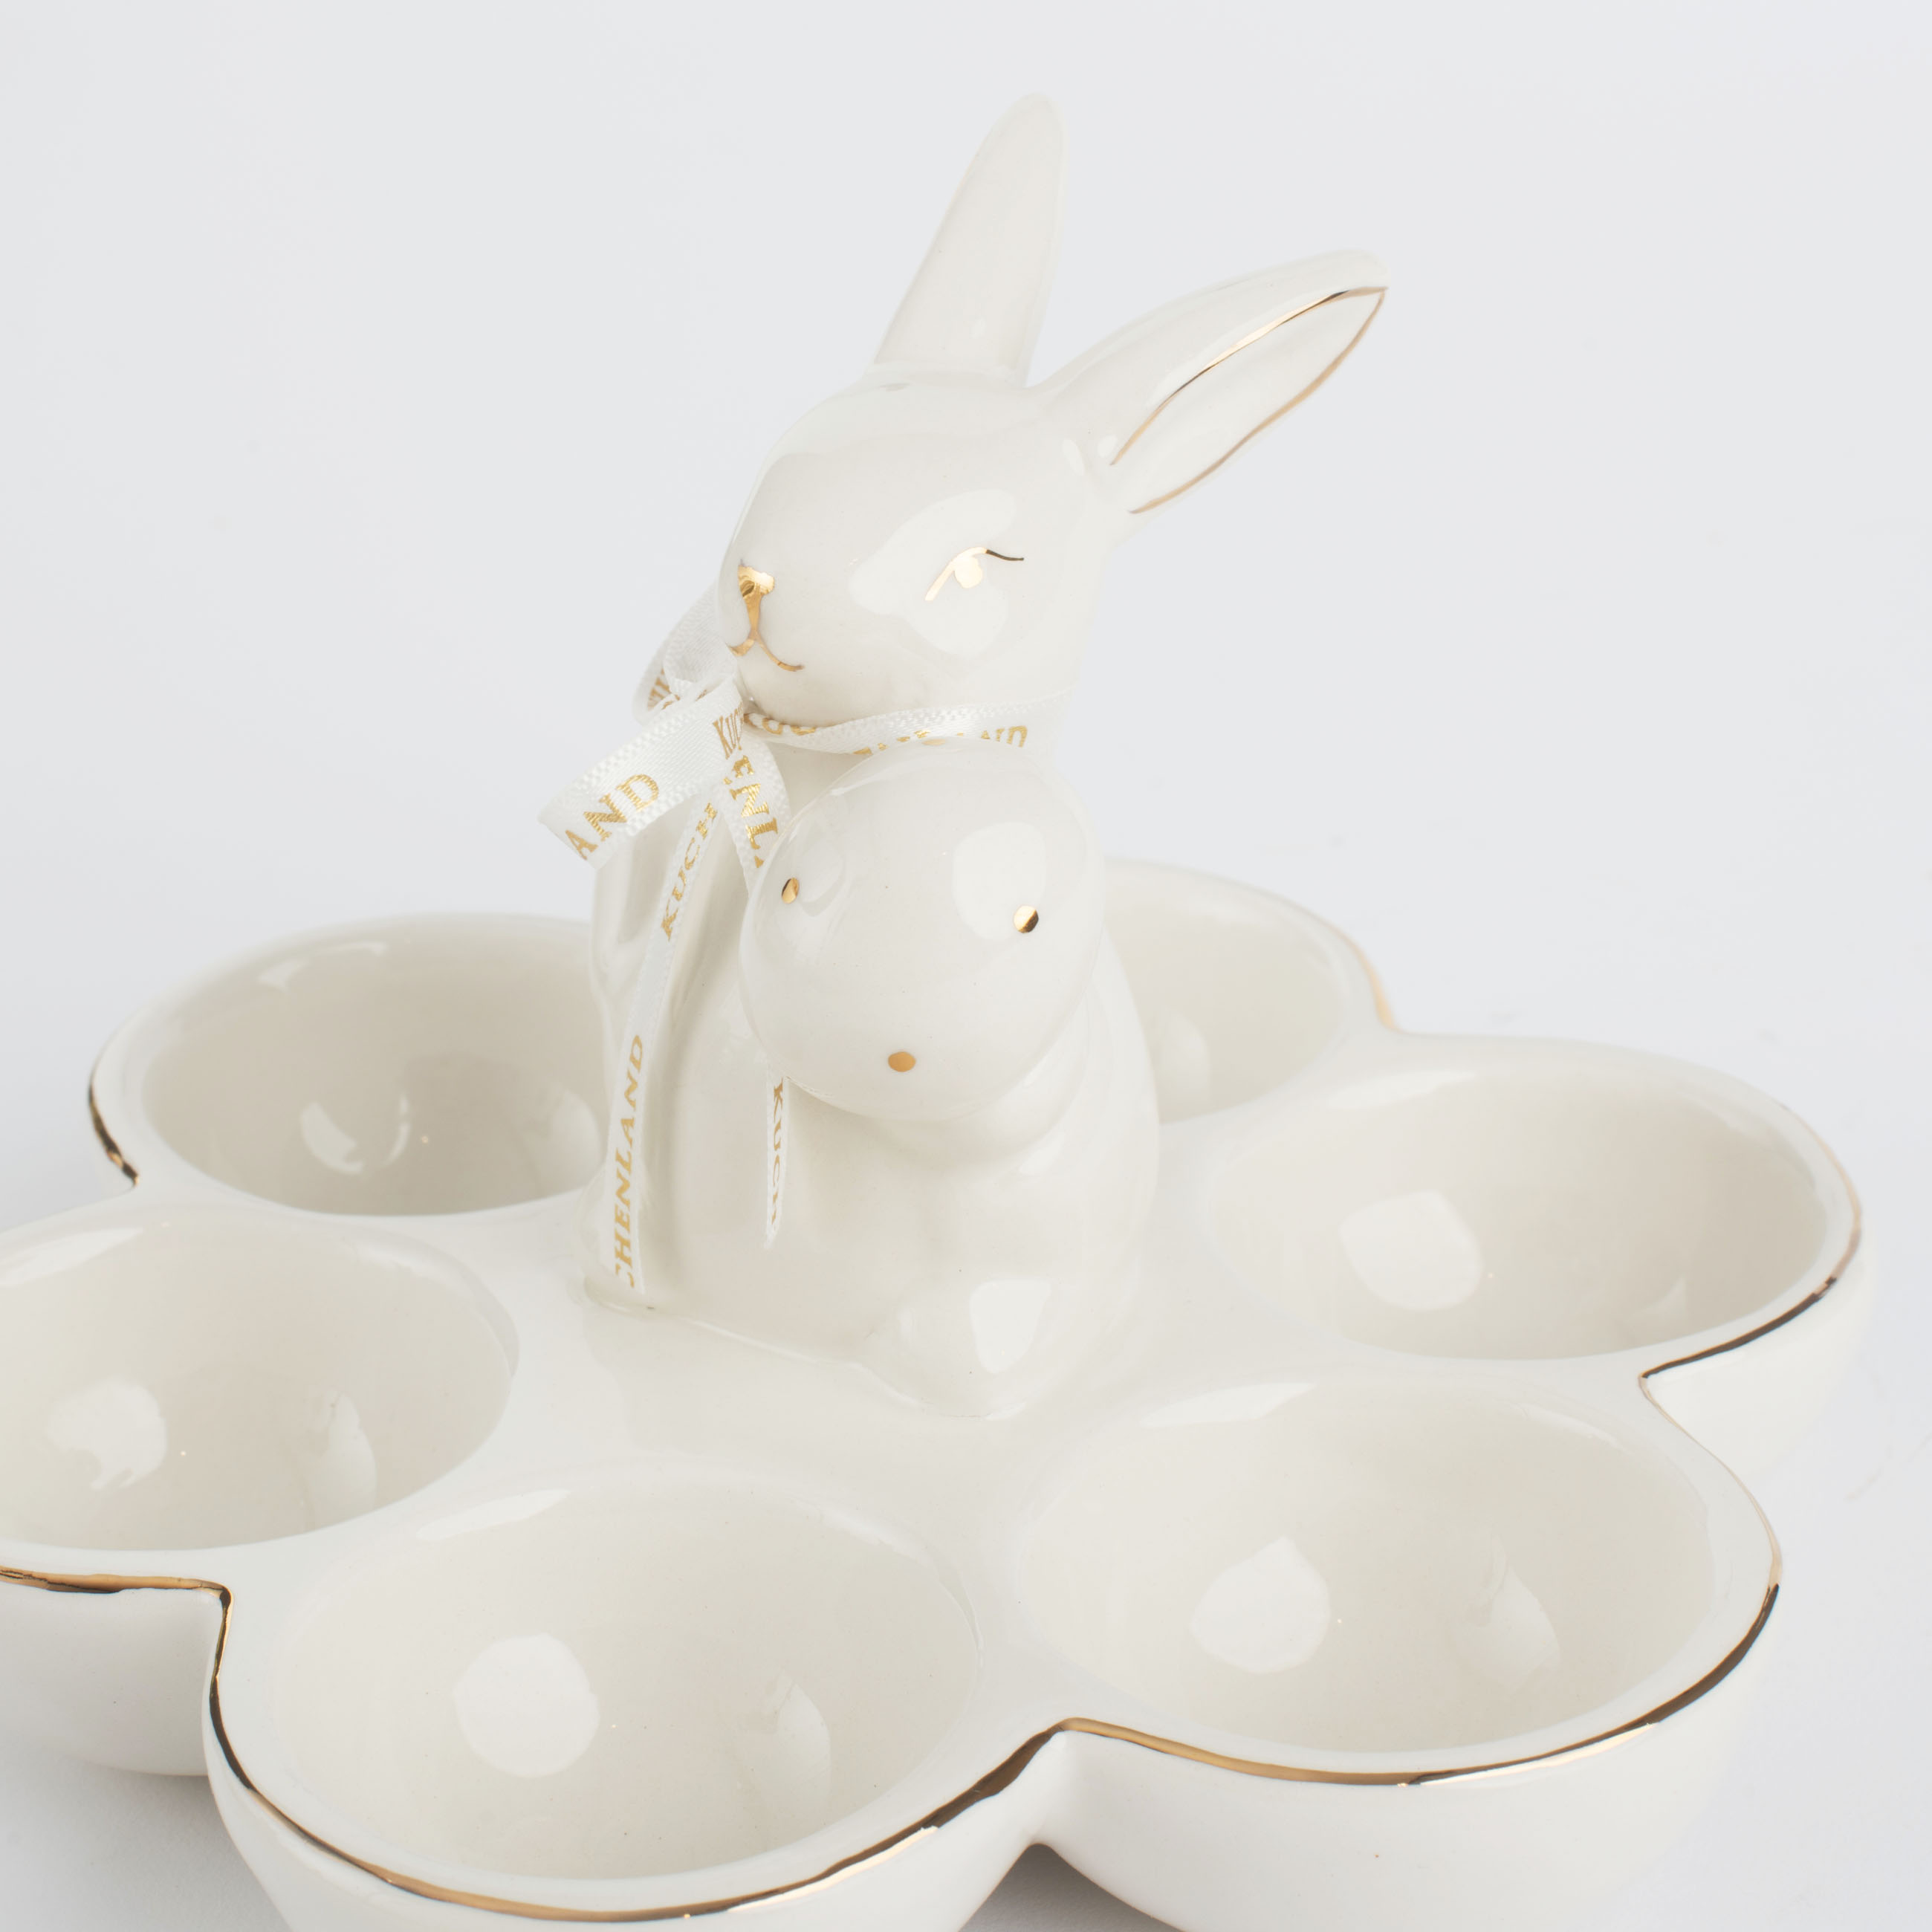 Блюдо пасхальное, 16 см, 6 отд, керамика, бело-золотистое, Кролик с яйцом, Easter gold изображение № 4